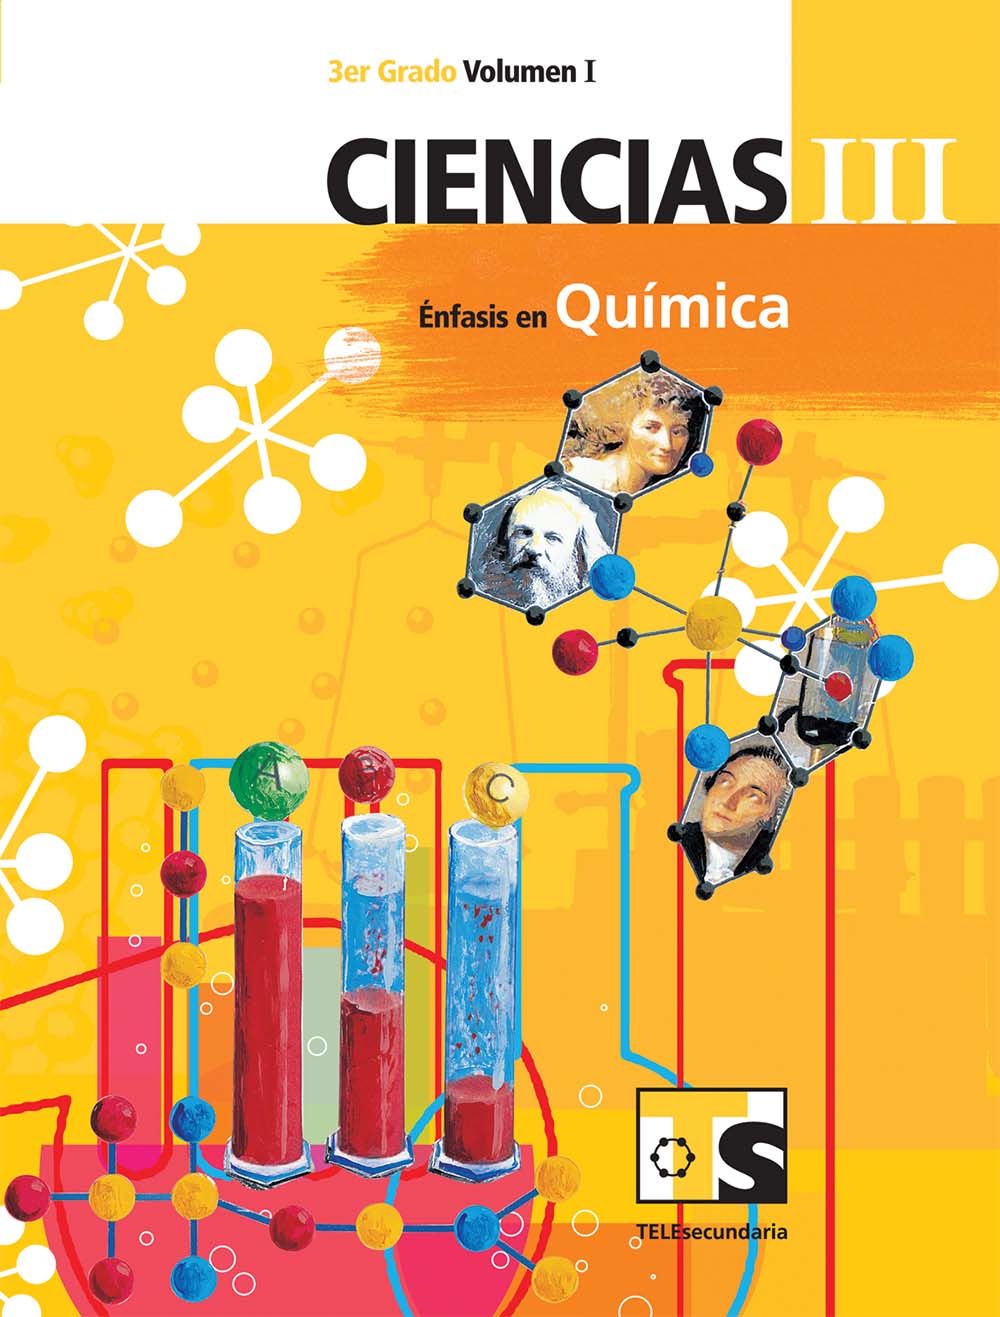 Ciencias III.  Énfasis en Quimica. Vol. I., Editorial: Secretaría de Educación Pública, Nivel: Telesecundaria, Grado: 3